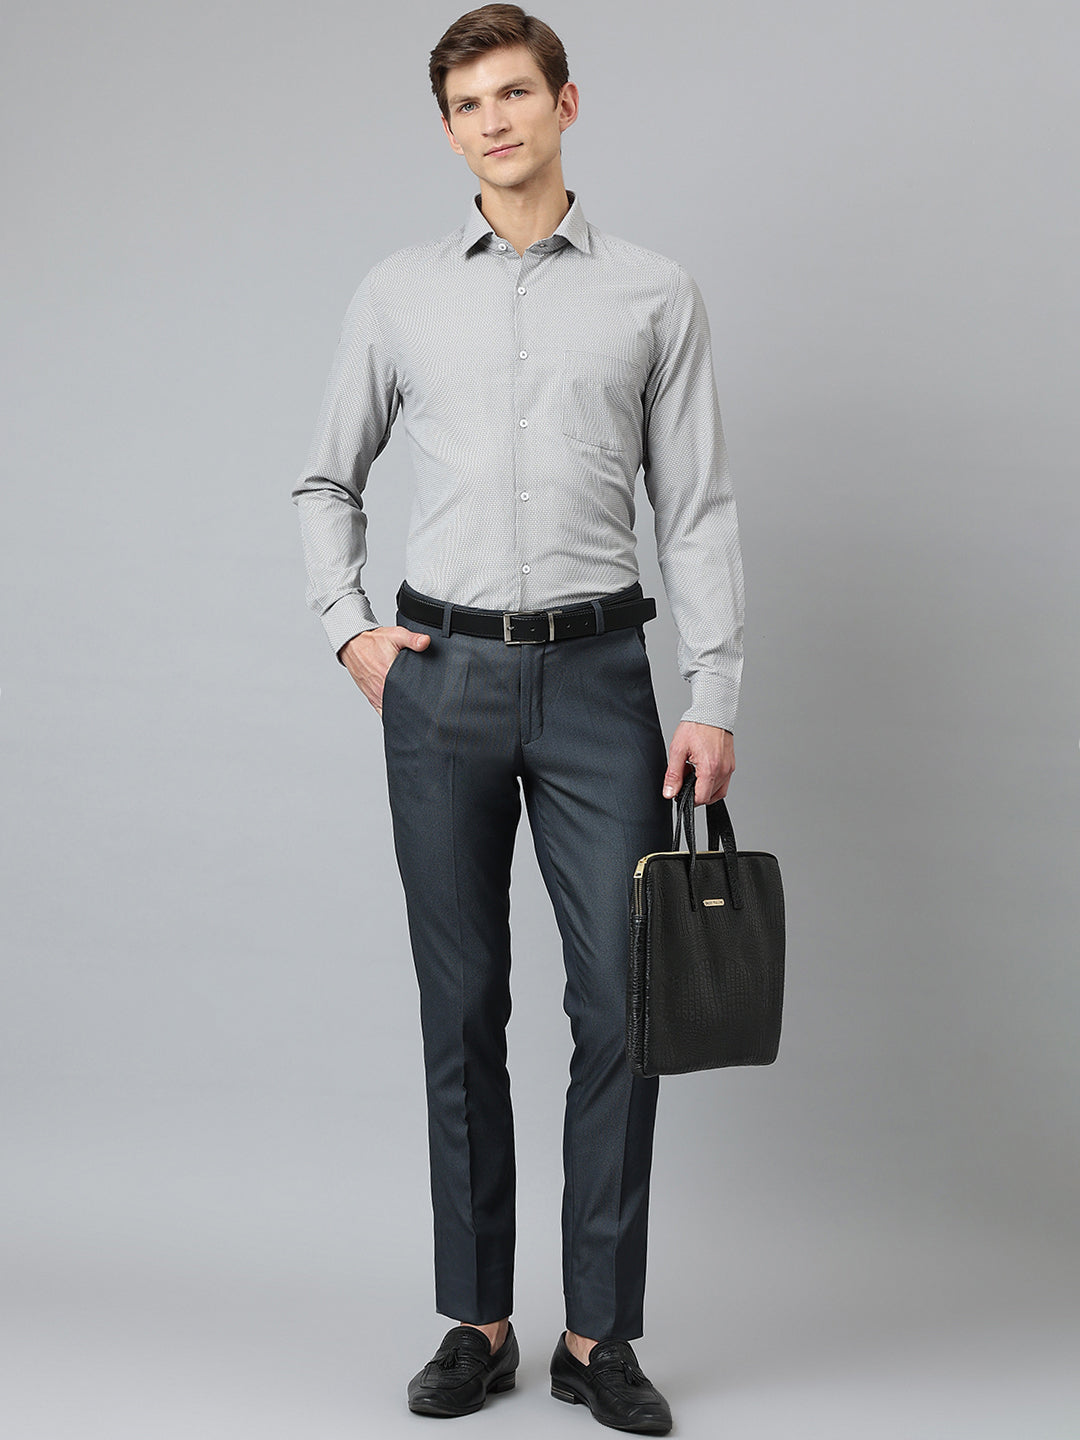 Oskar Button-Up Shirt for Tall Men | American Tall